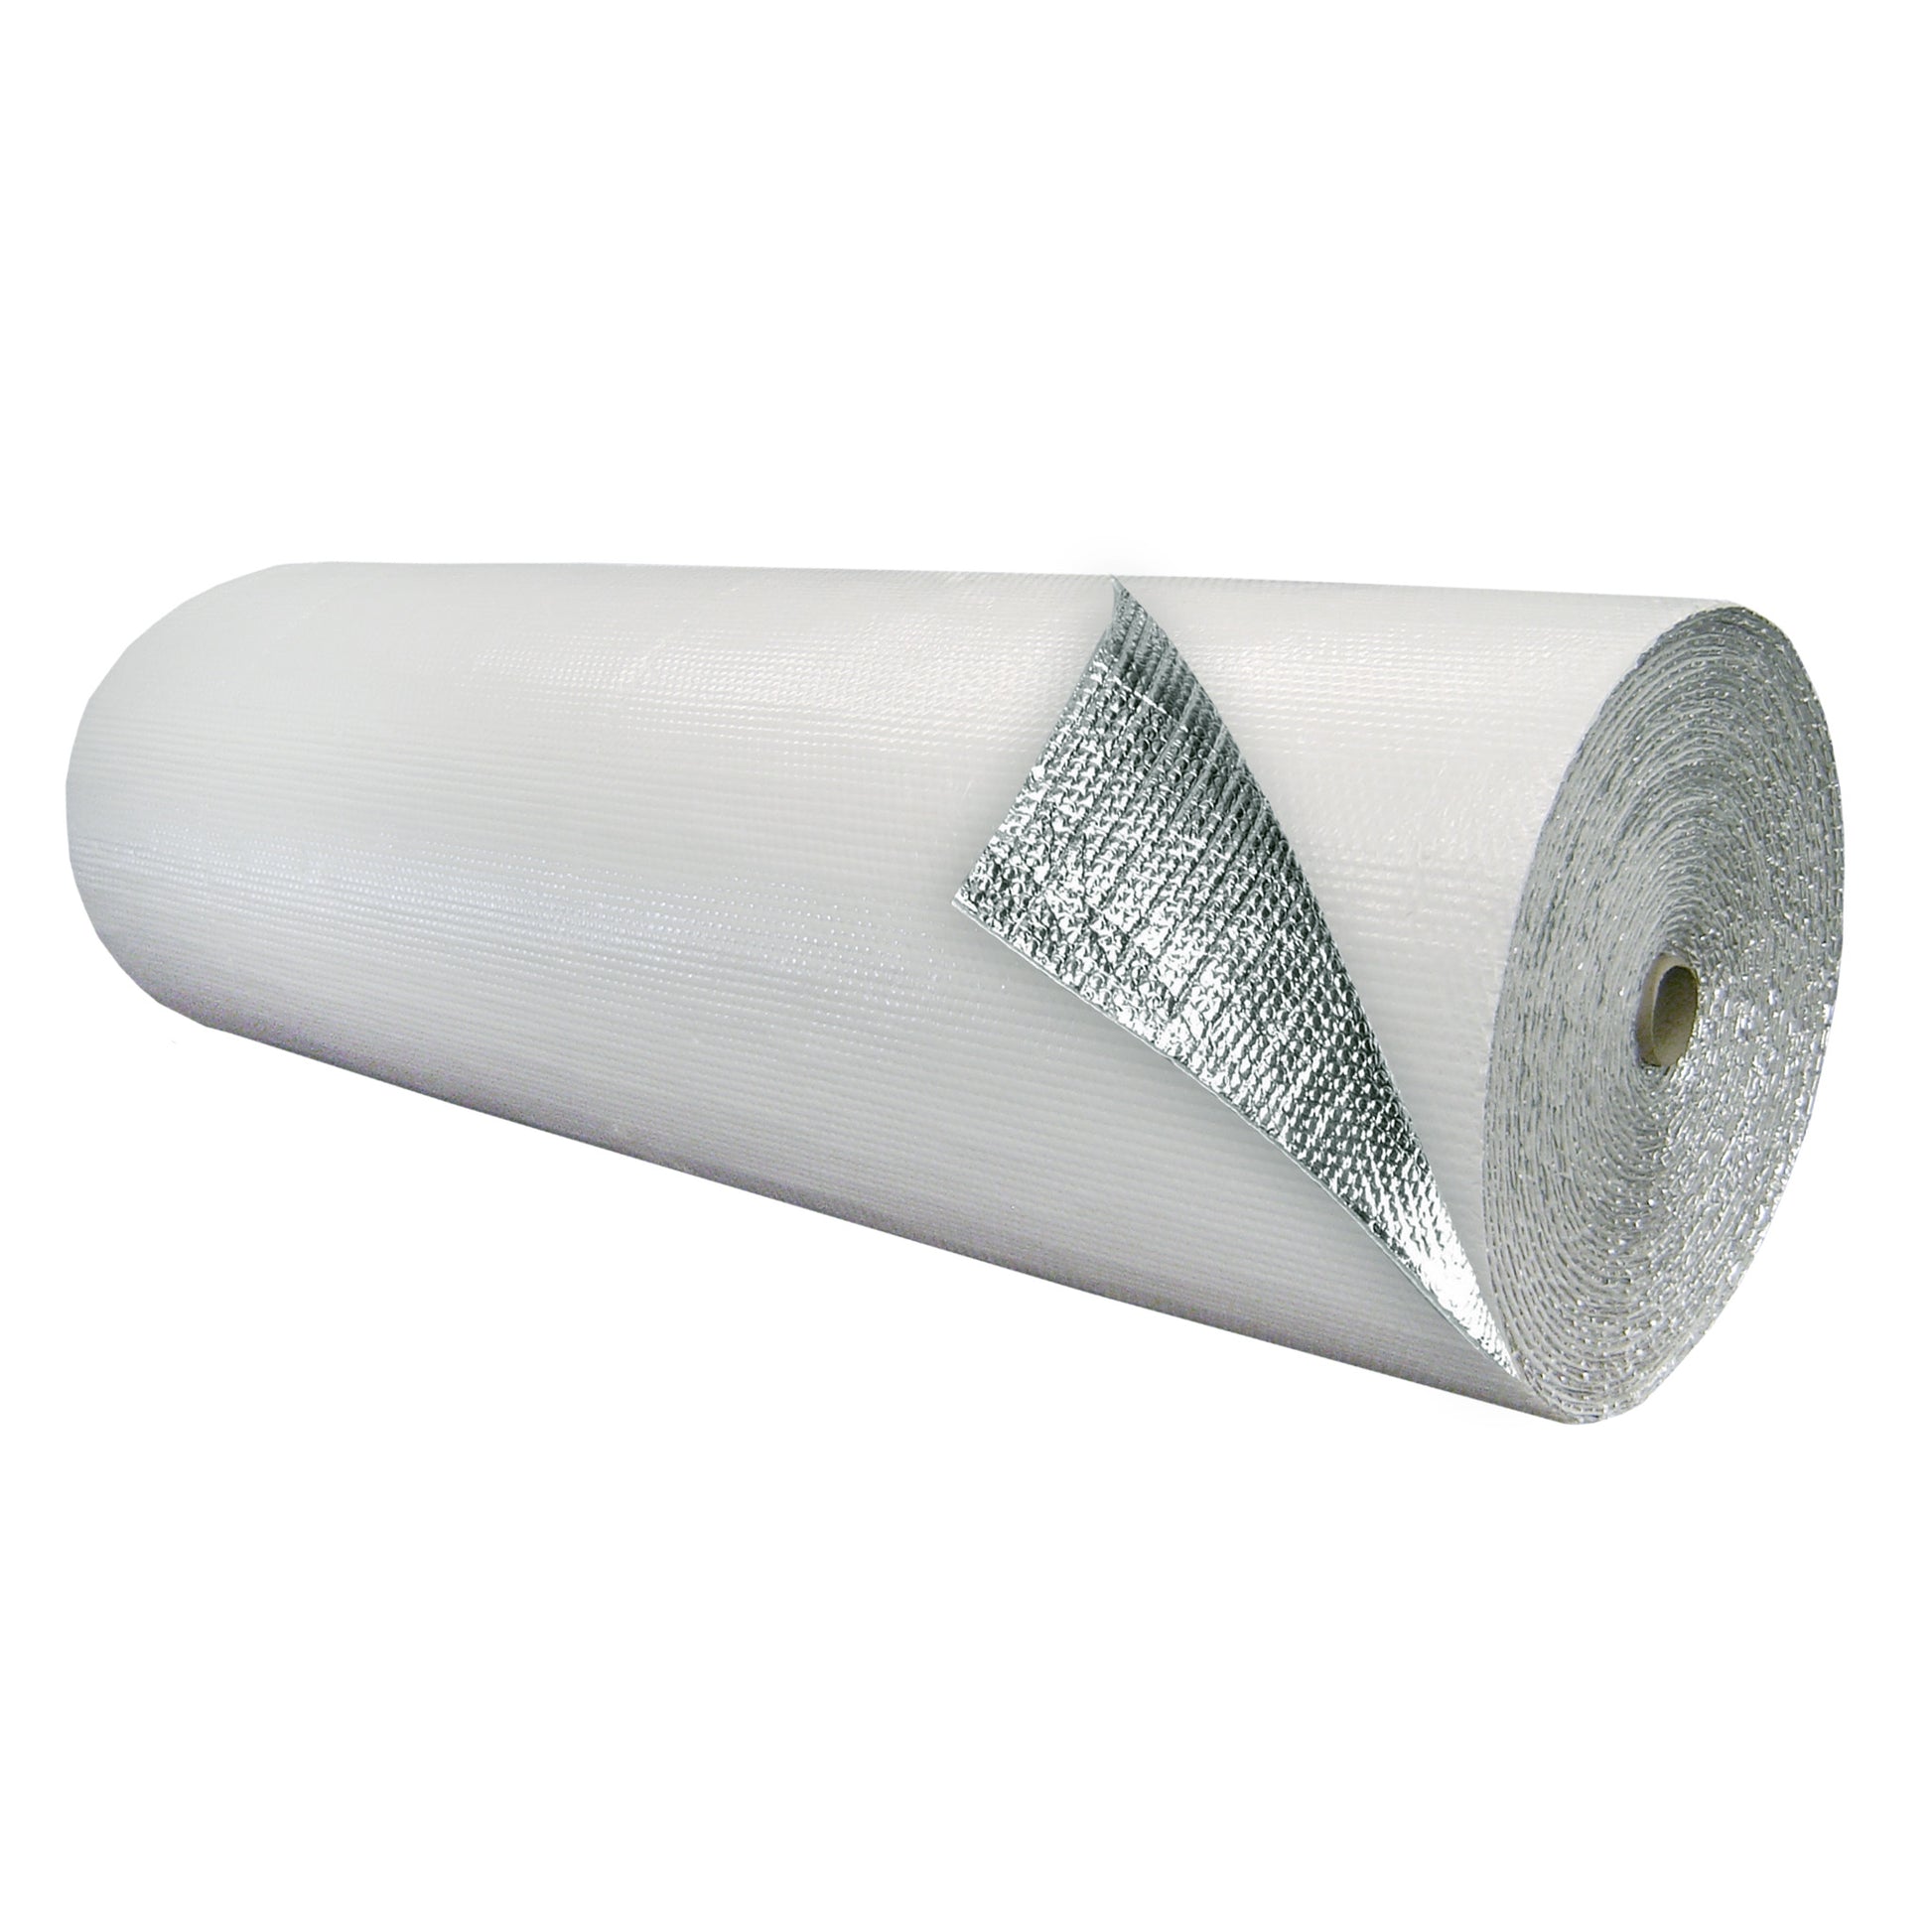 Double Bubble Insulation - White/Foil - 6' X 125' (750 sq ft) – EcoFoil